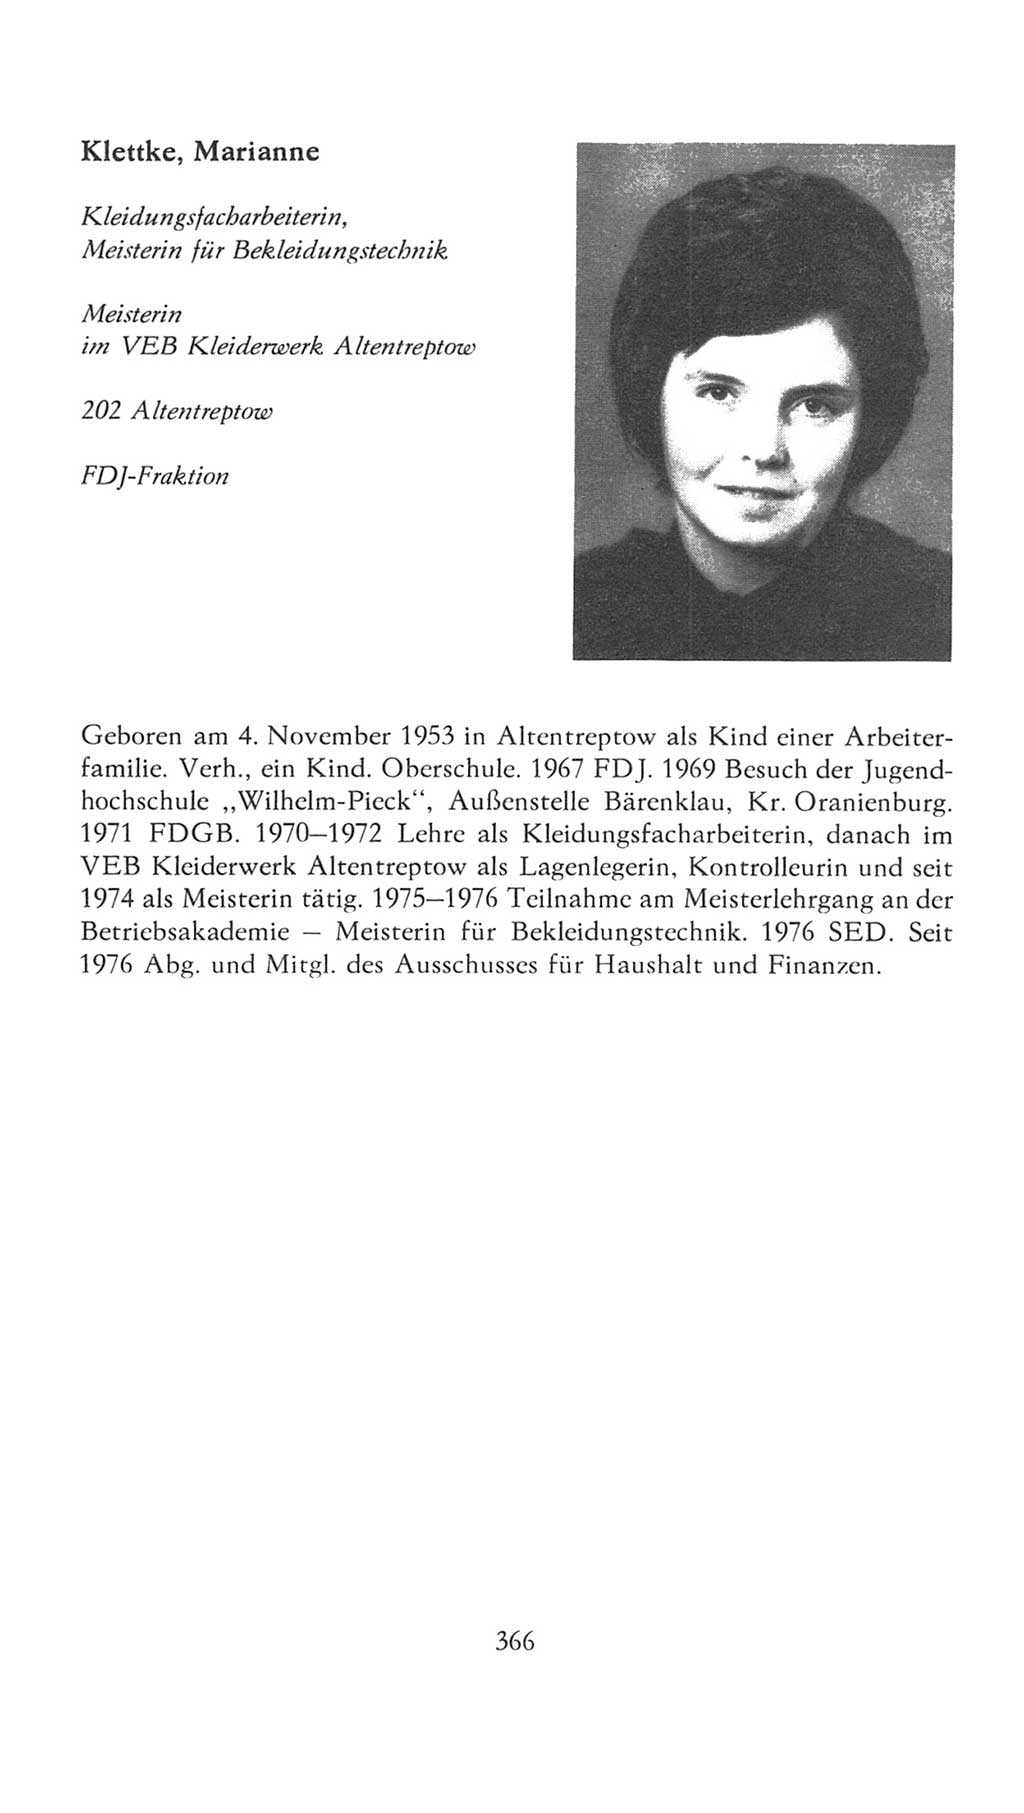 Volkskammer (VK) der Deutschen Demokratischen Republik (DDR), 7. Wahlperiode 1976-1981, Seite 366 (VK. DDR 7. WP. 1976-1981, S. 366)